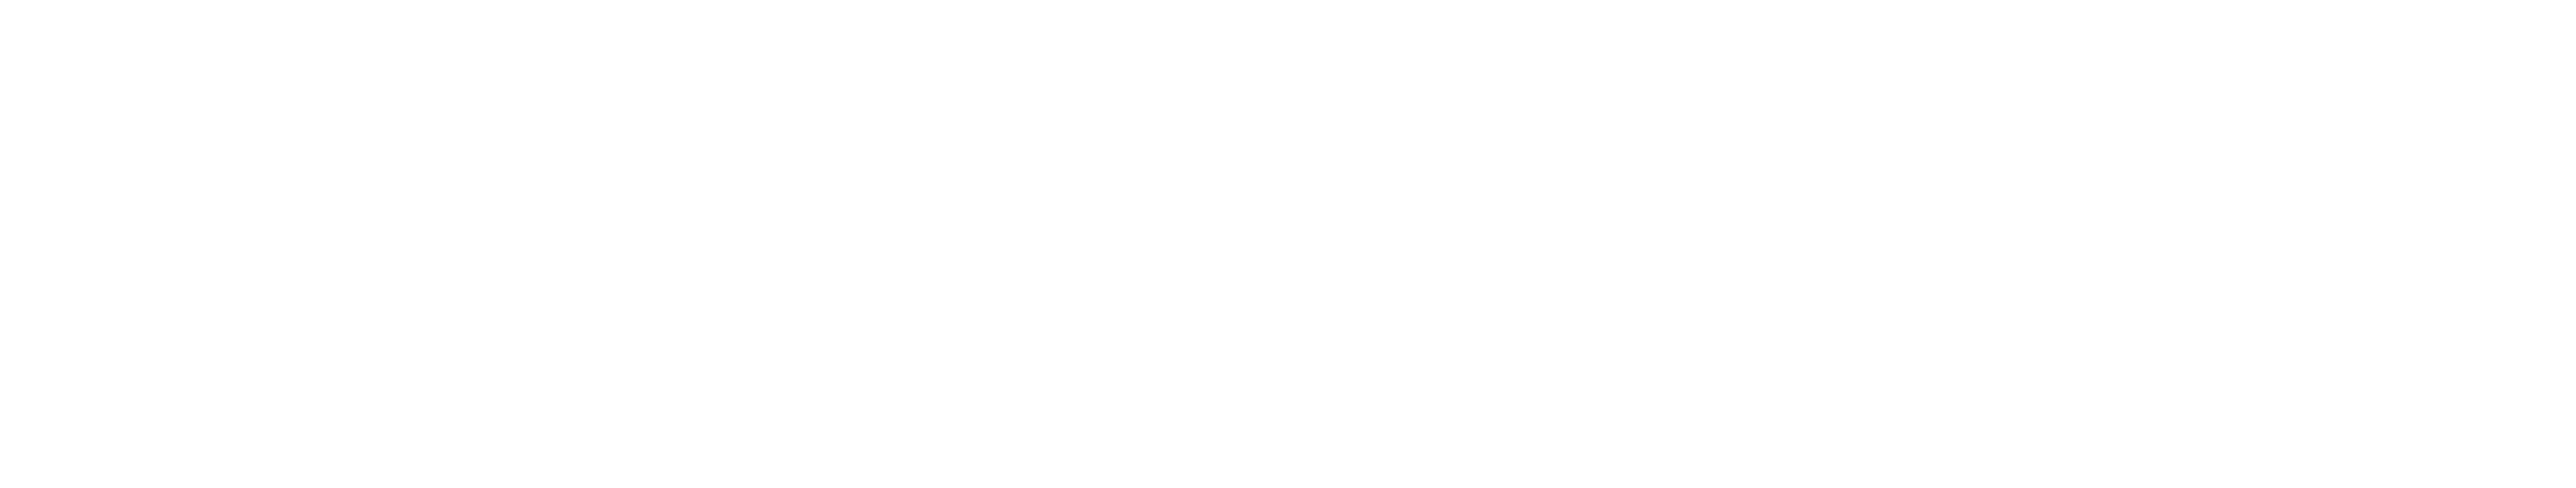 jj_logo_singleline_white_rgb